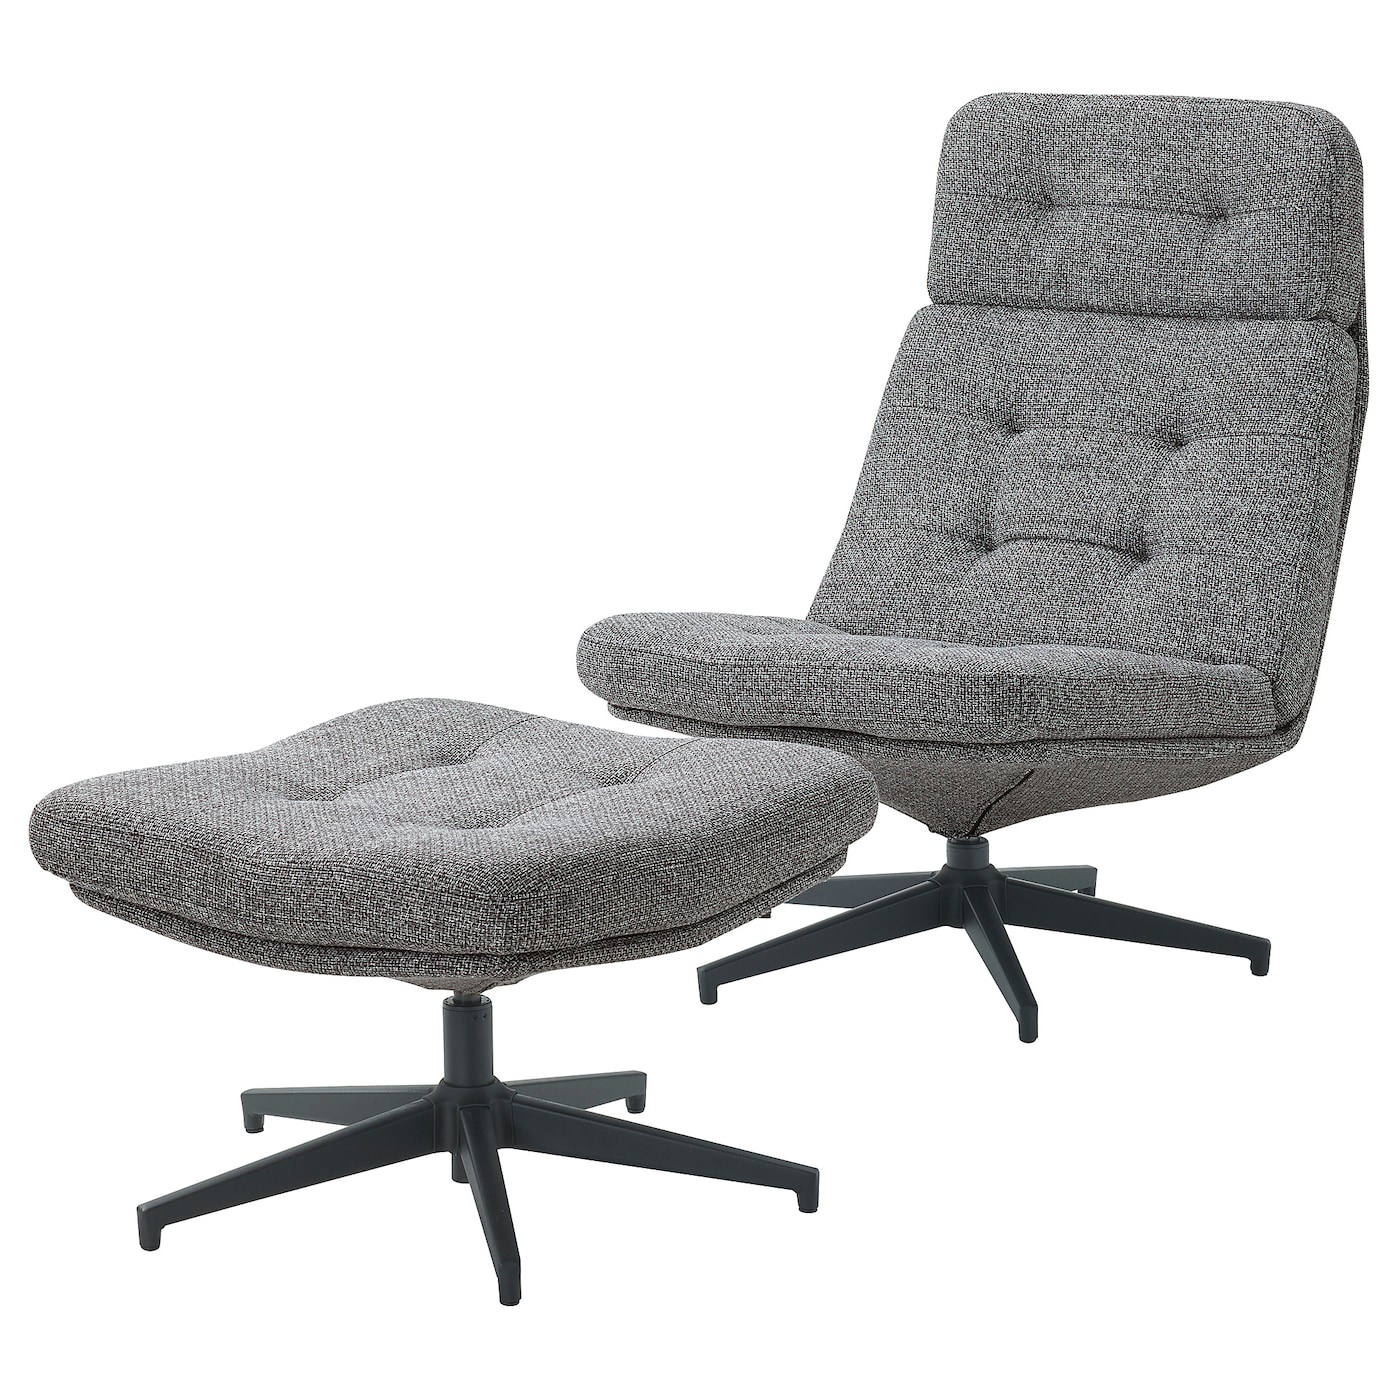 ХАВБЕРГ Кресло и подставка для ног, Лейде серый/черный HAVBERG IKEA компьютерное кресло gy офисное кресло студенческое учебное кресло подъемное небольшое вращающееся кресло удобное длинное сидение прост